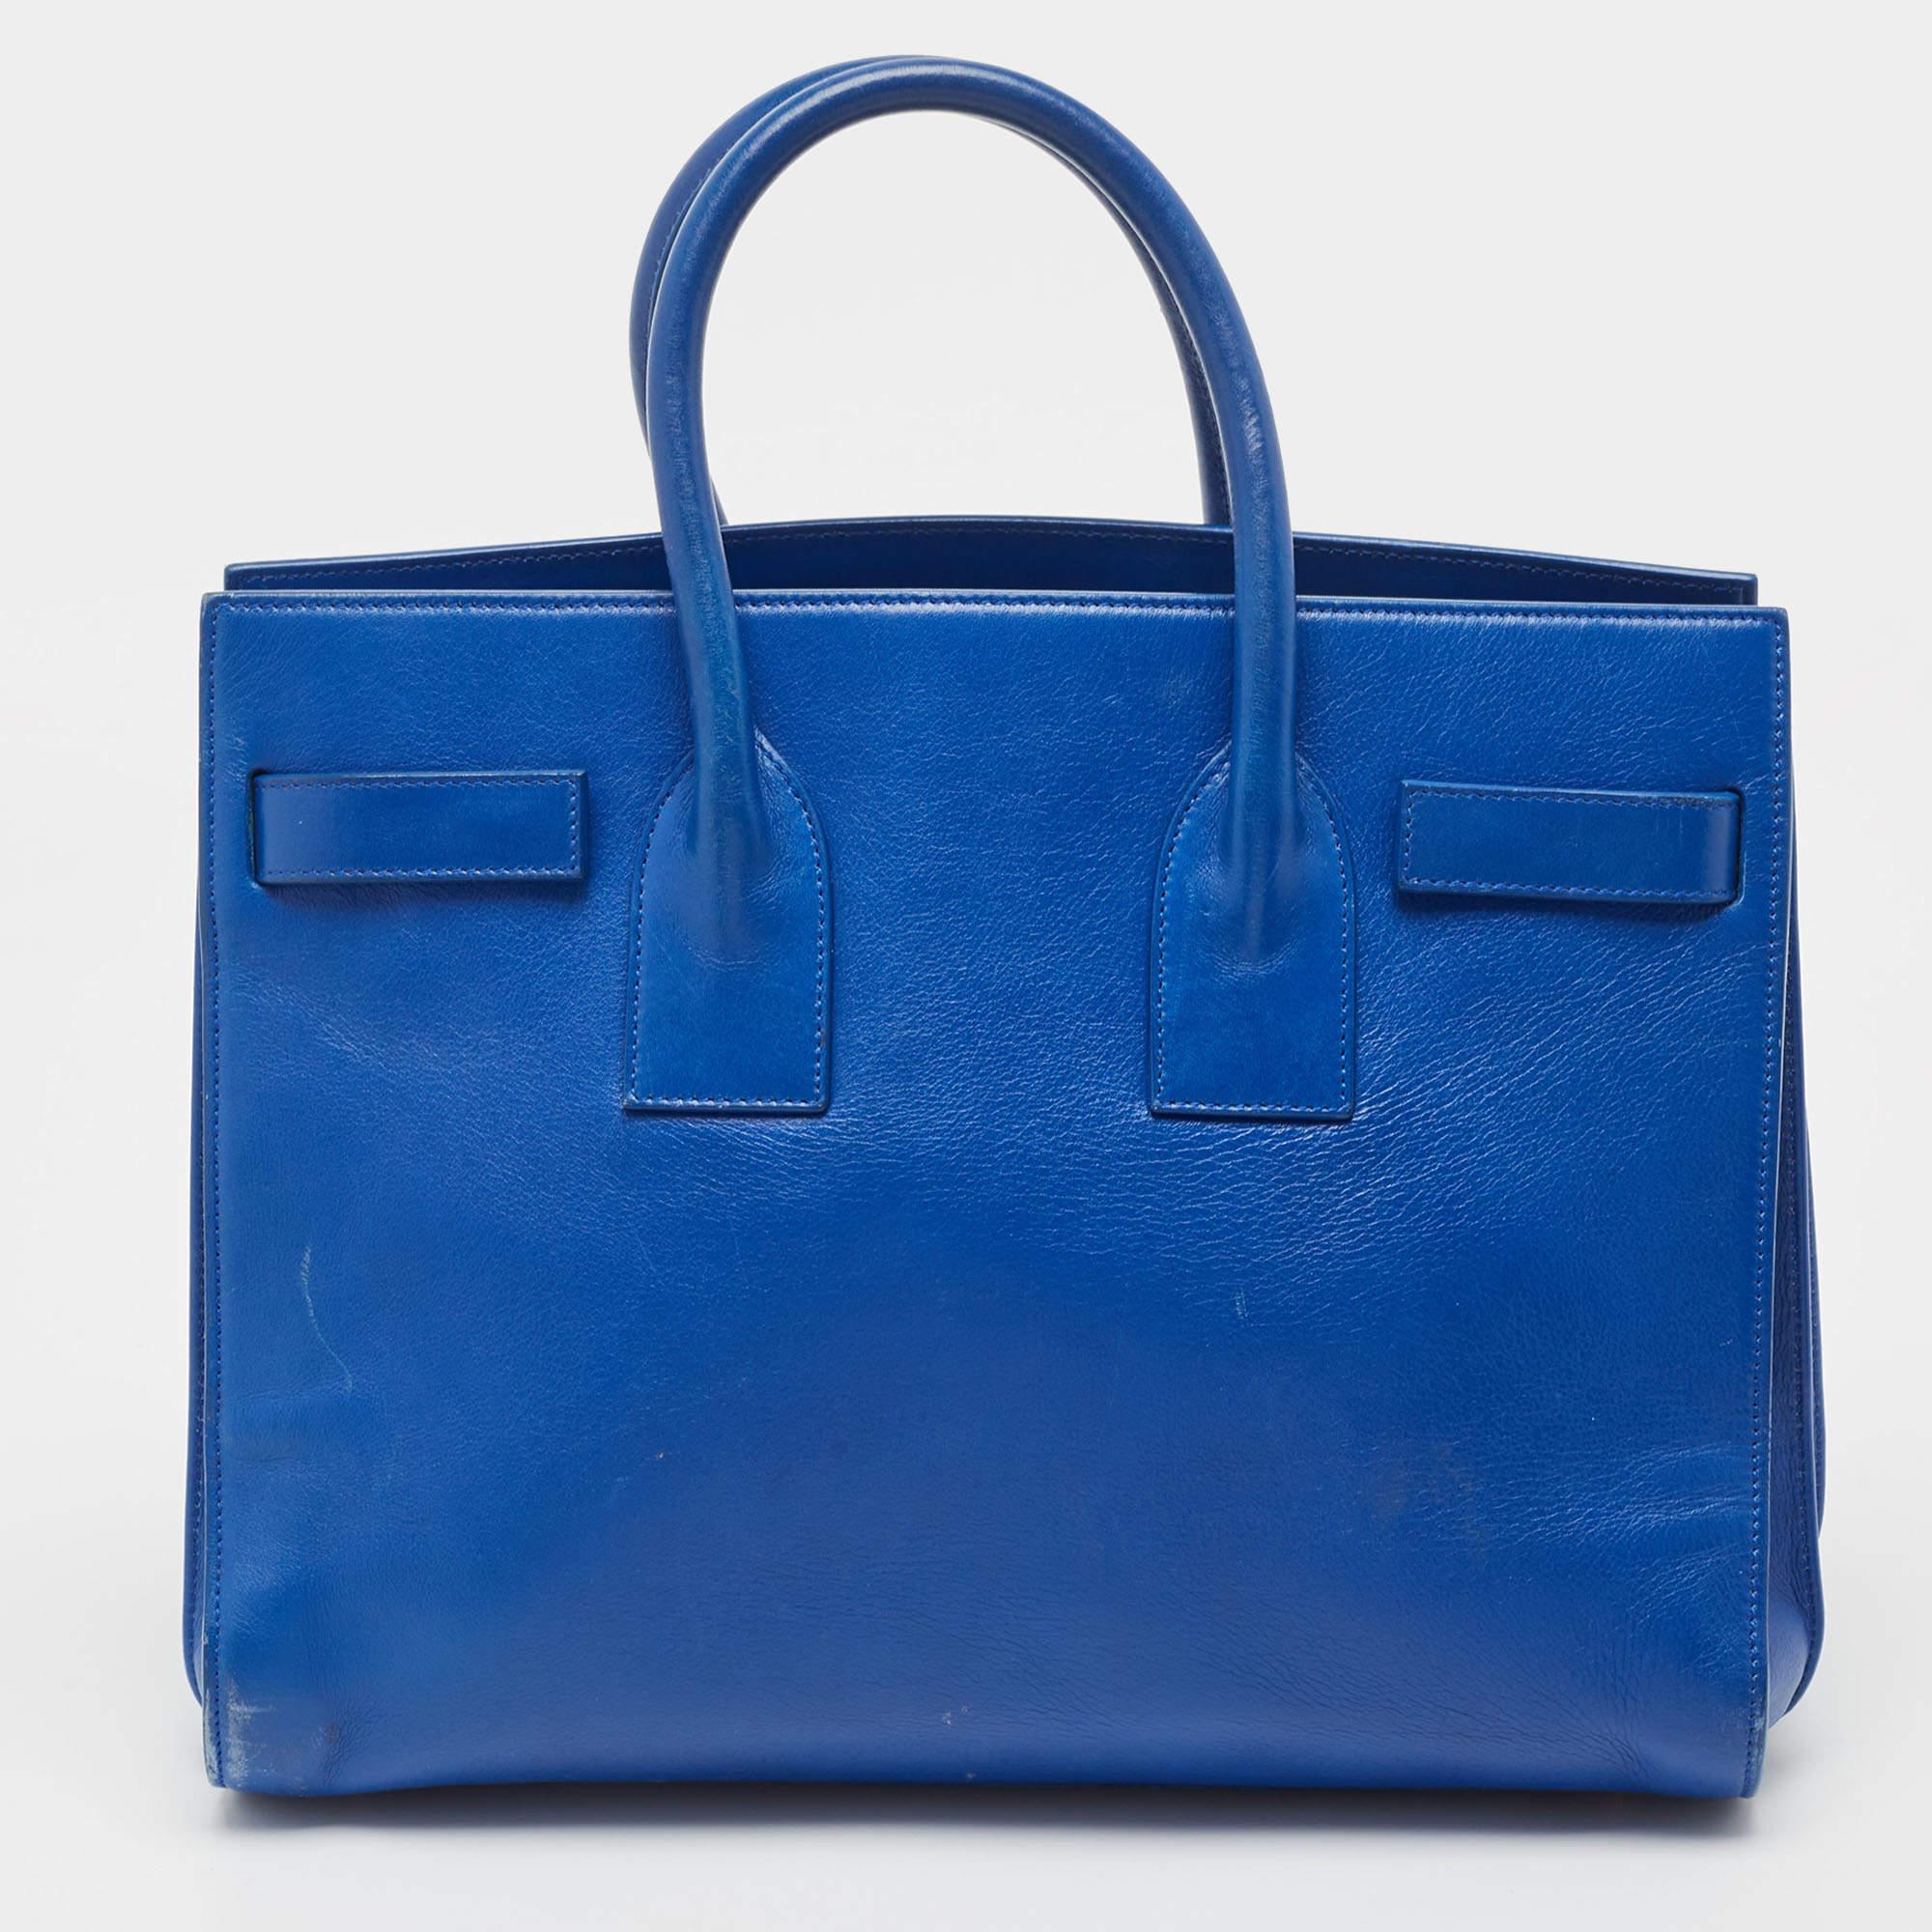 Diese Sac de Jour Tote von Saint Laurent hat eine Struktur, die ein raffiniertes Bild abgibt. Die aus blauem Leder gefertigte Tasche lässt sich durch doppelte obere Griffe und einen Schulterriemen schick tragen. Die Tasche ist mit einem stilvollen